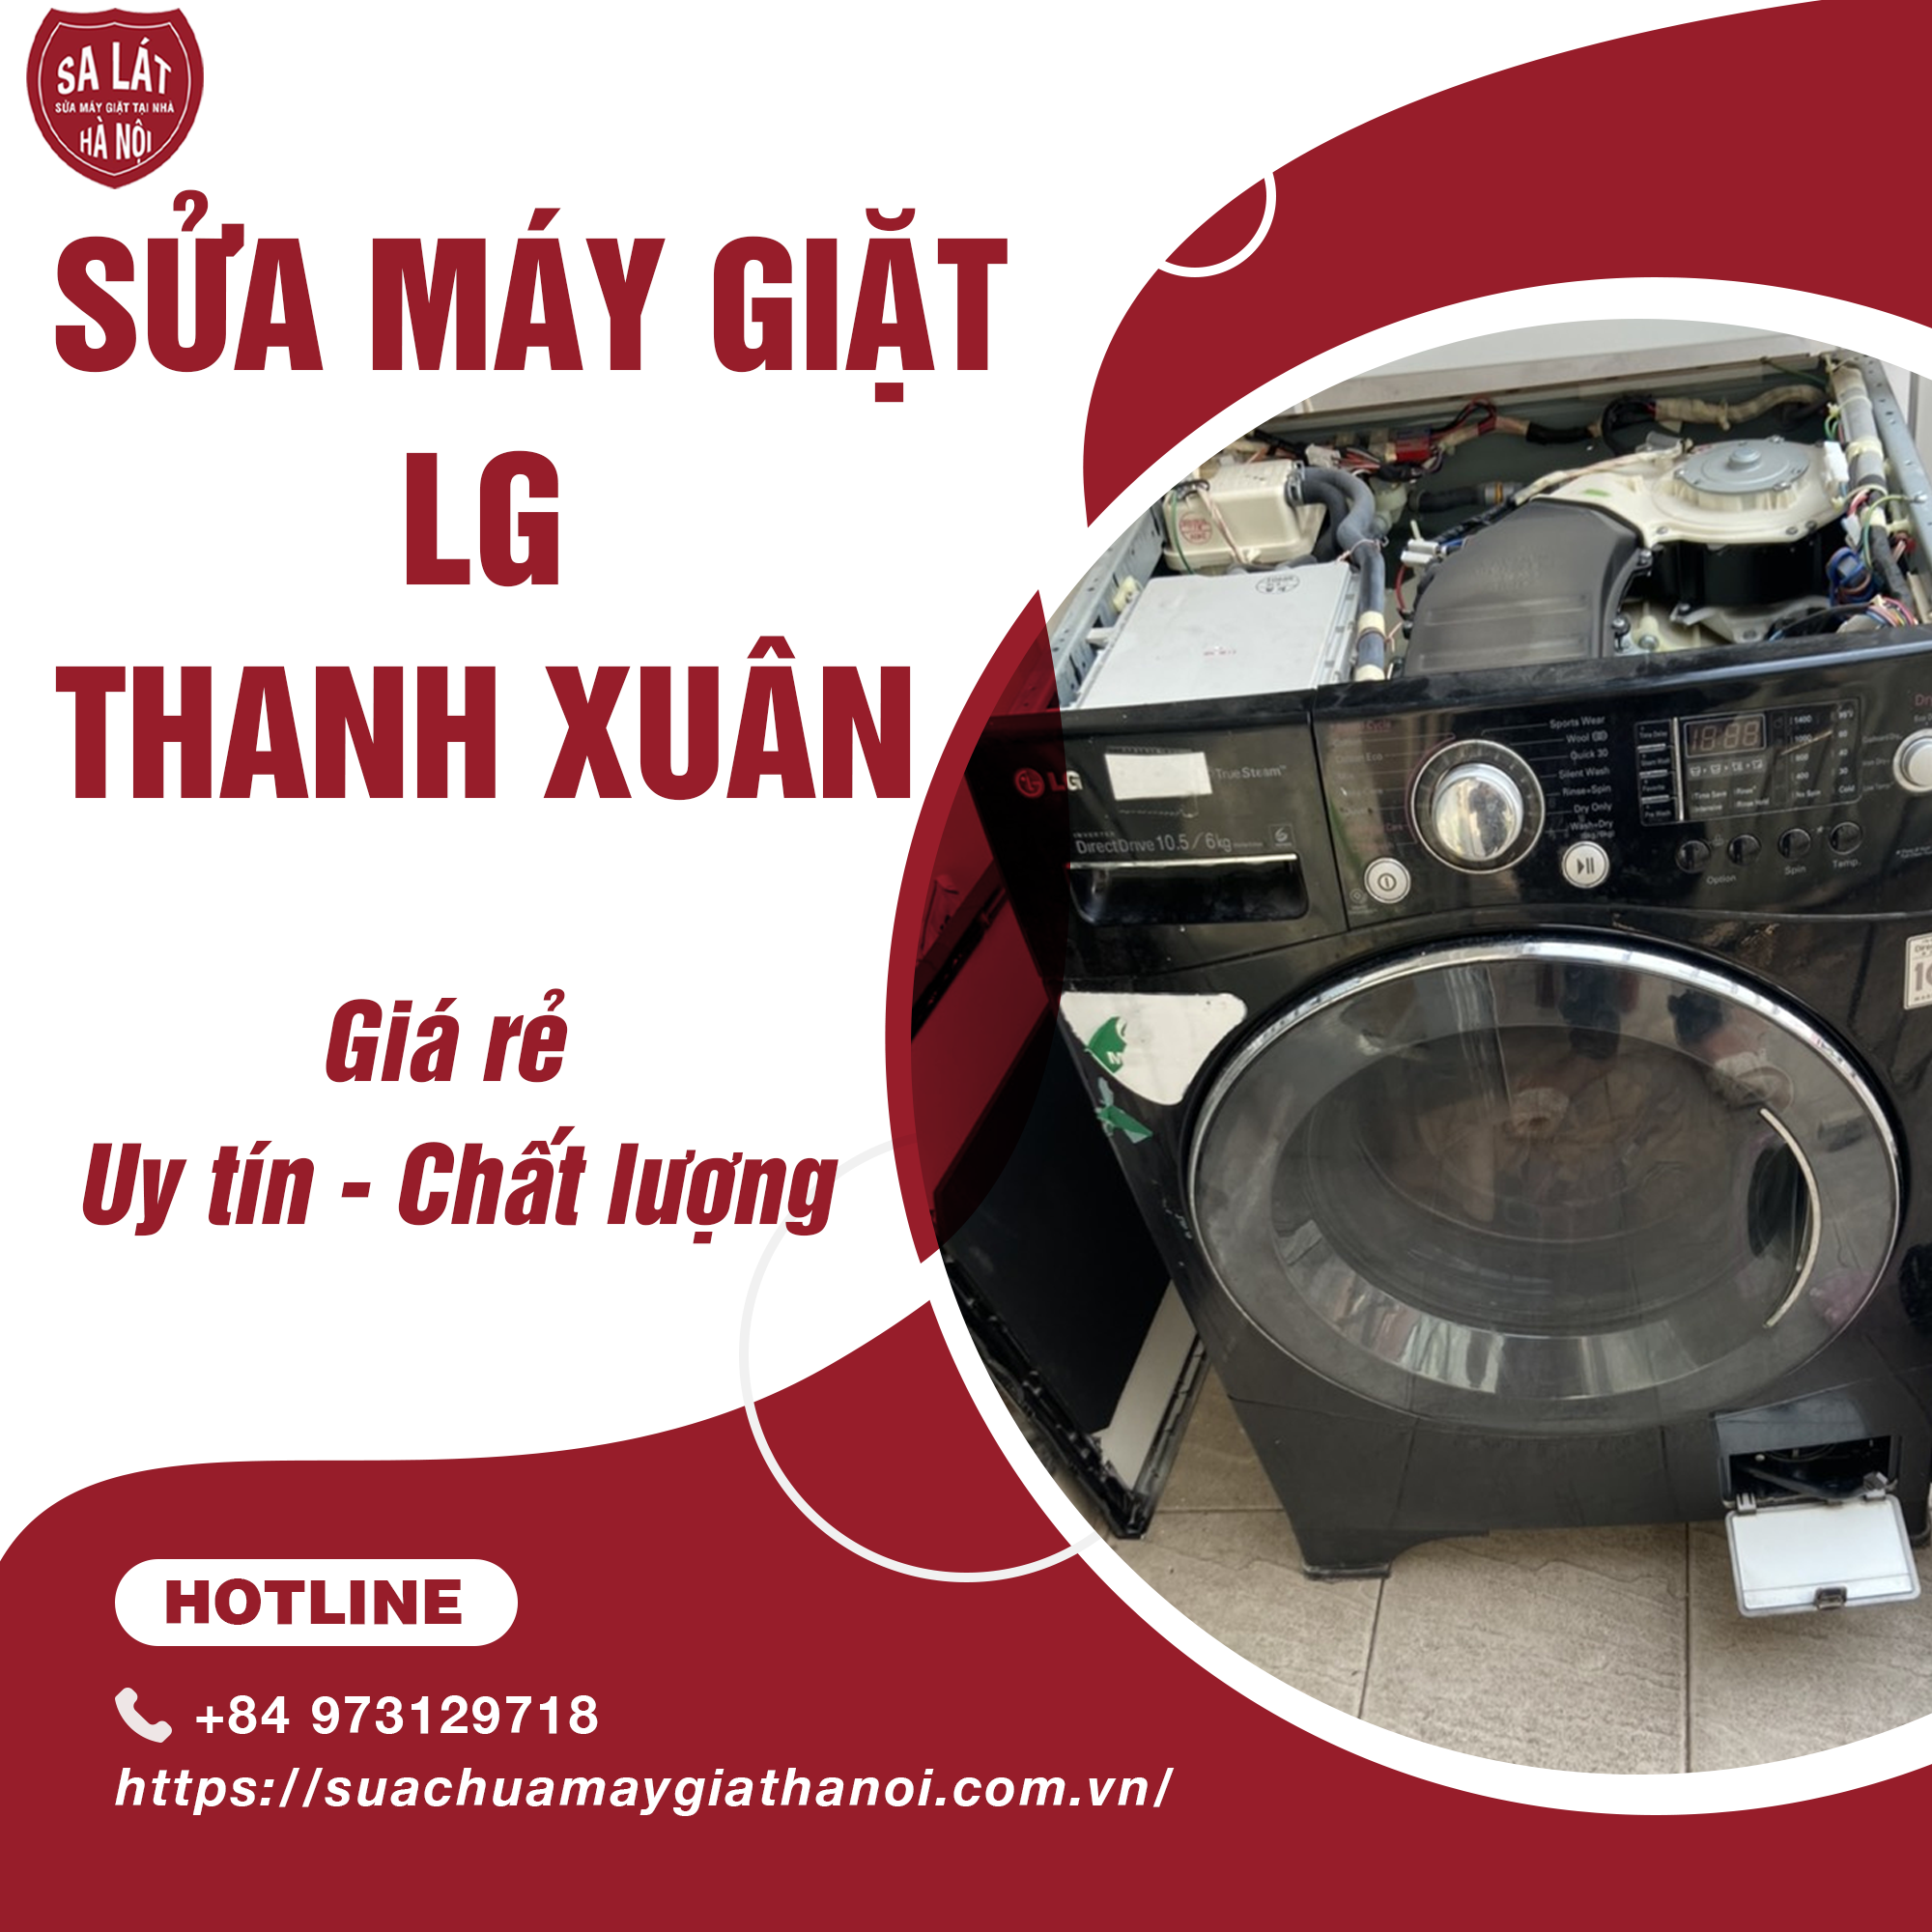 Sửa Máy Giặt LG Quận Thanh Xuân – Giá Rẻ, Uy Tín, Chất Lượng!